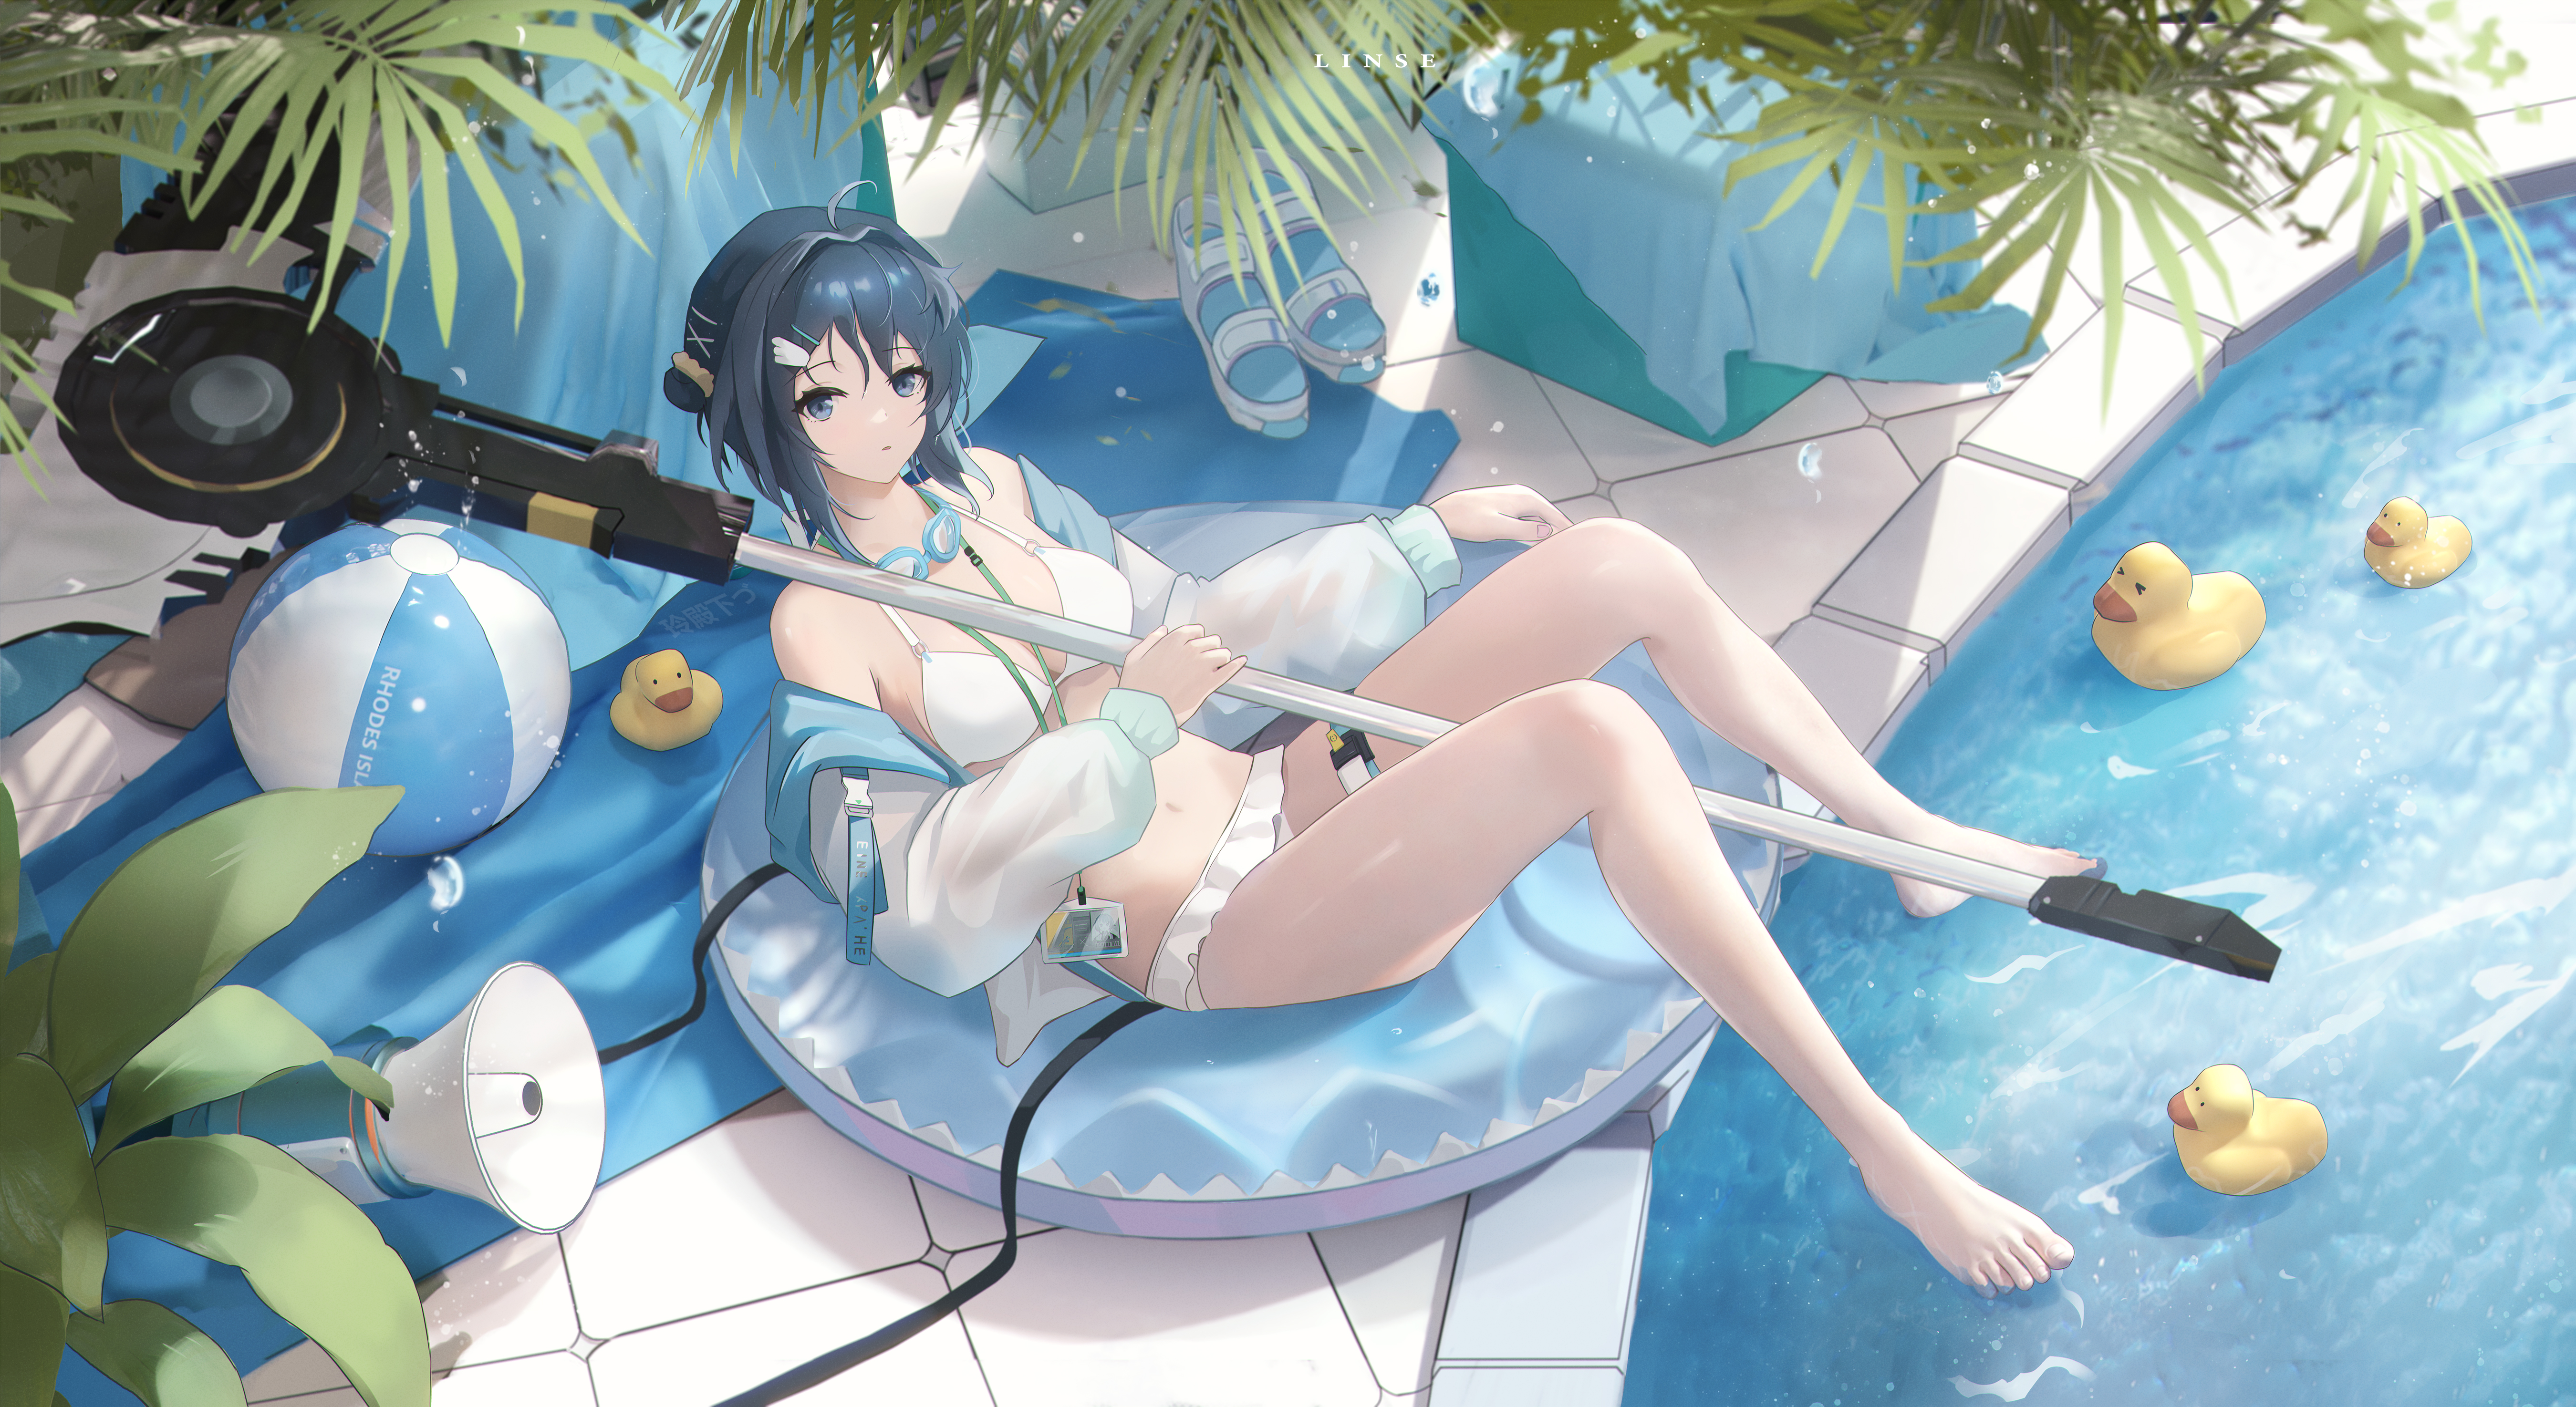 Fantasy Girl Anime Girls Floater Rubber Ducks Beach Ball Blue Eyes Blue Hair Water Swimming Pool 5400x2950